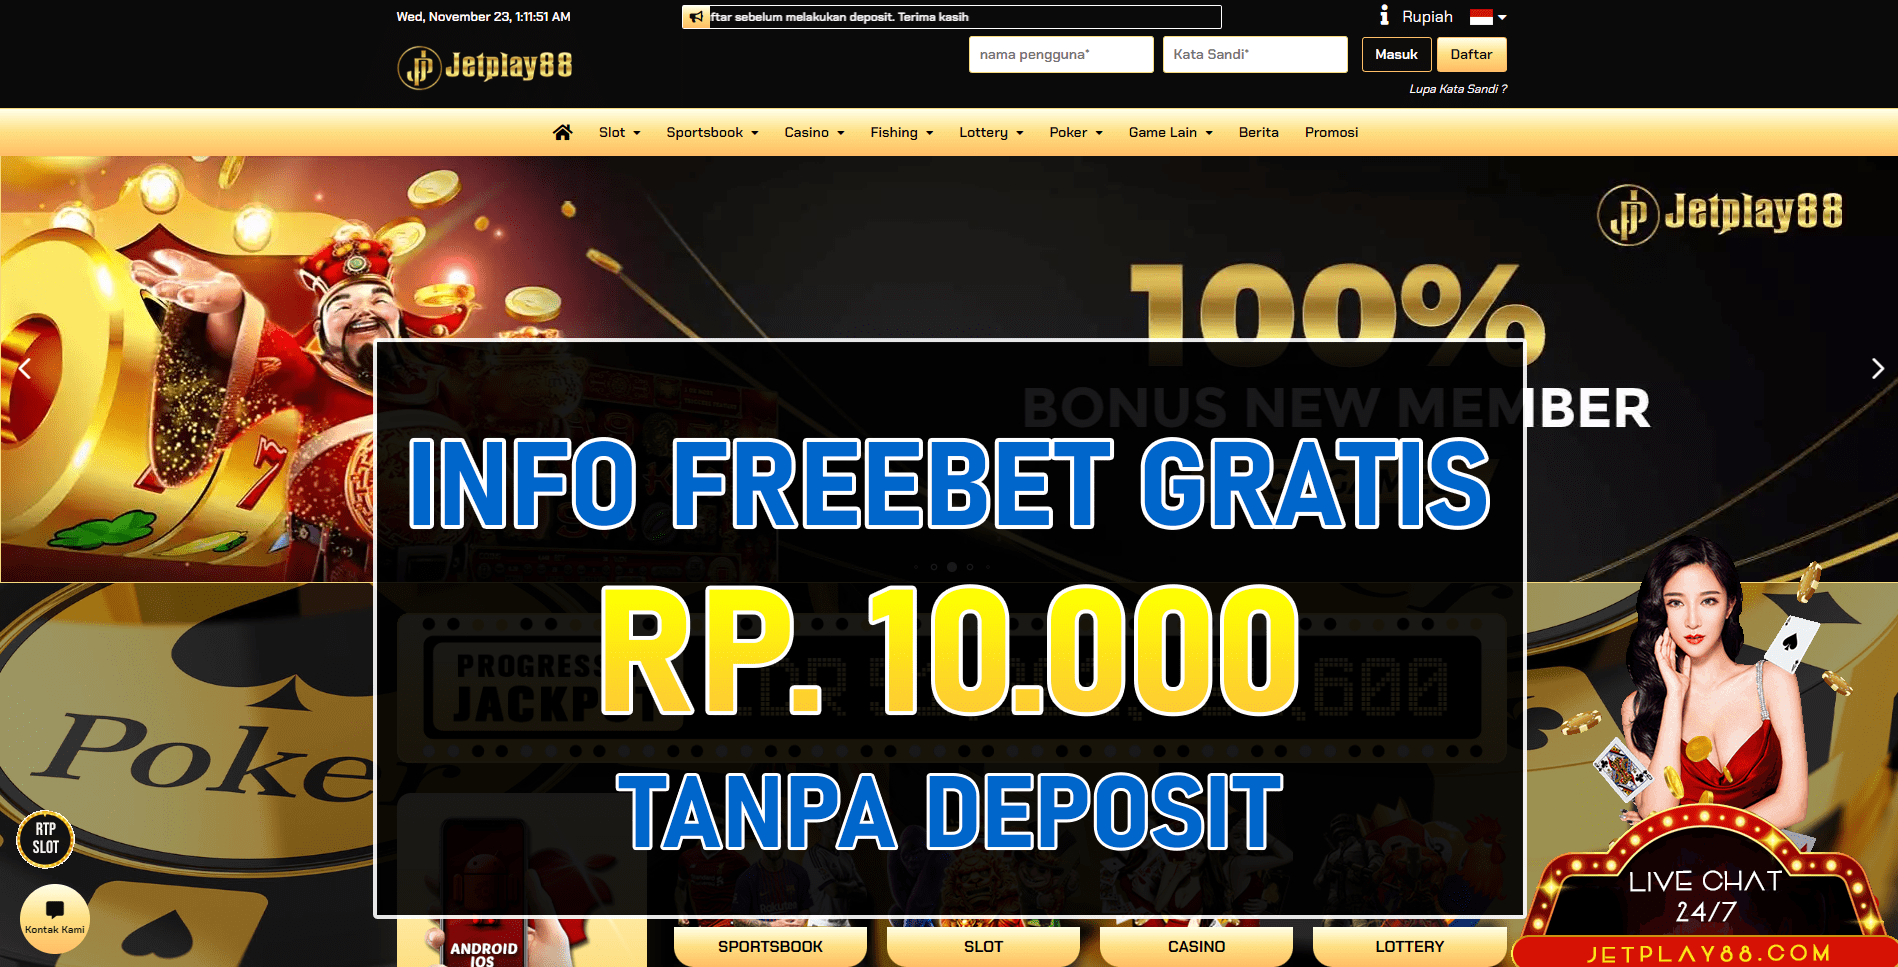 Freebet Tanpa Deposit Jetplay88